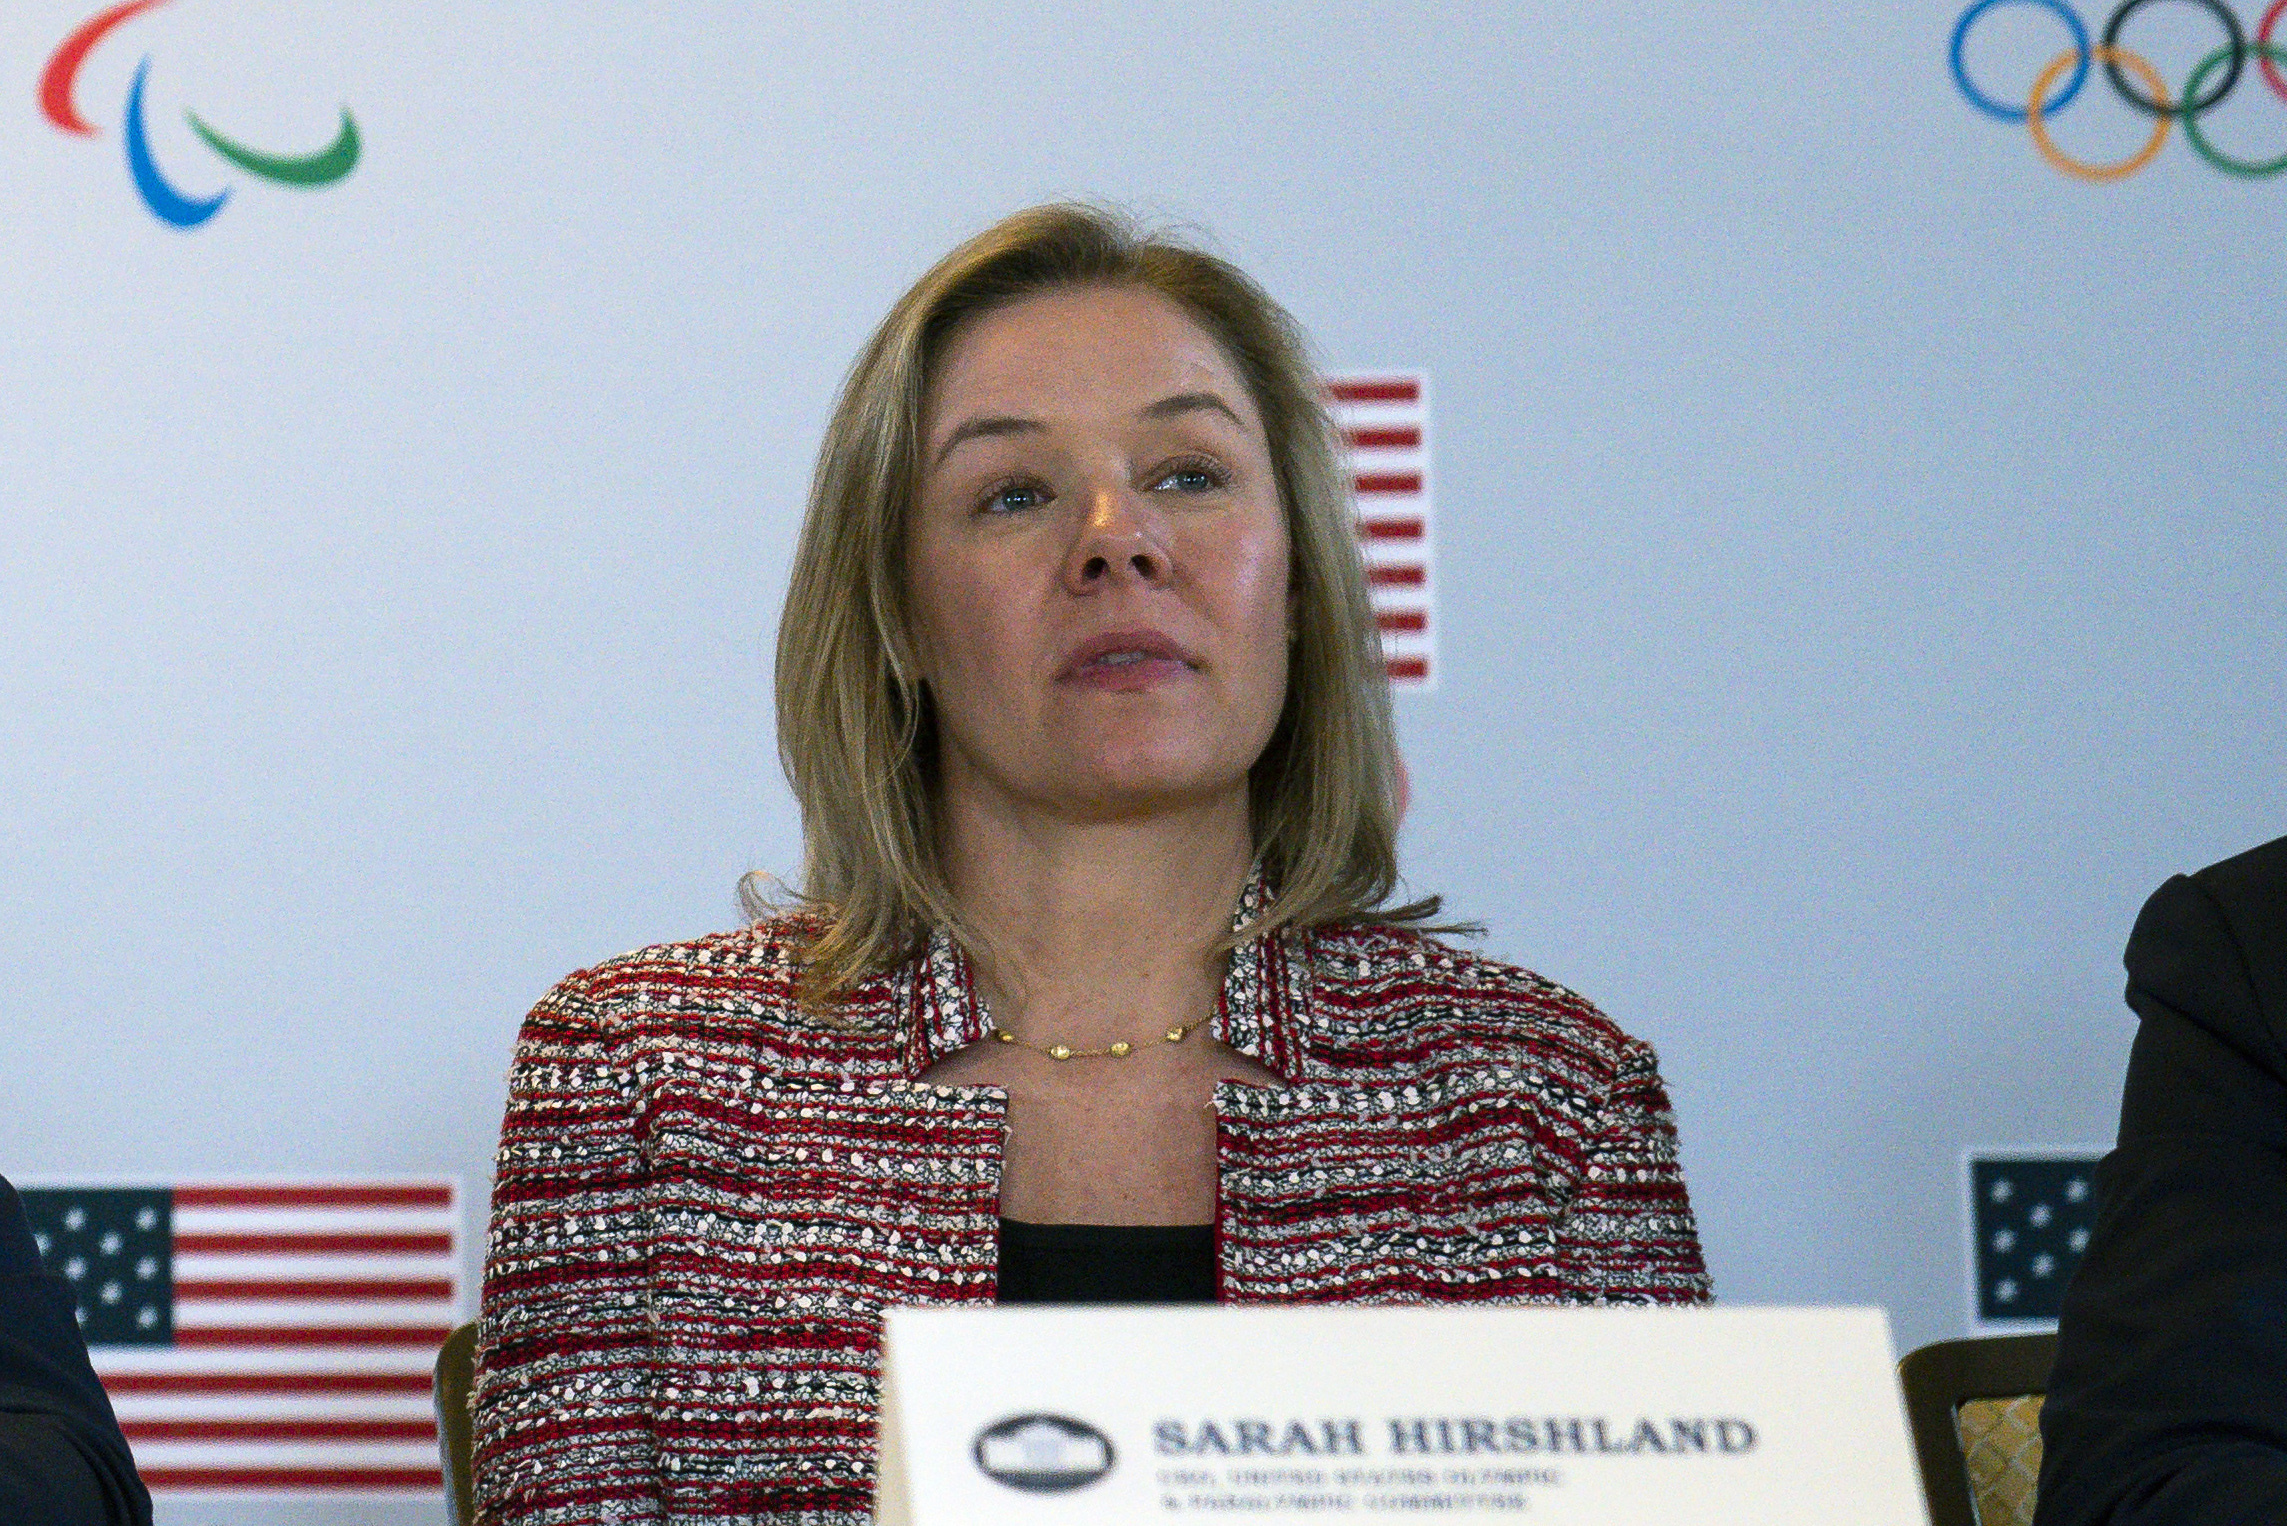 Sarah Hirshland